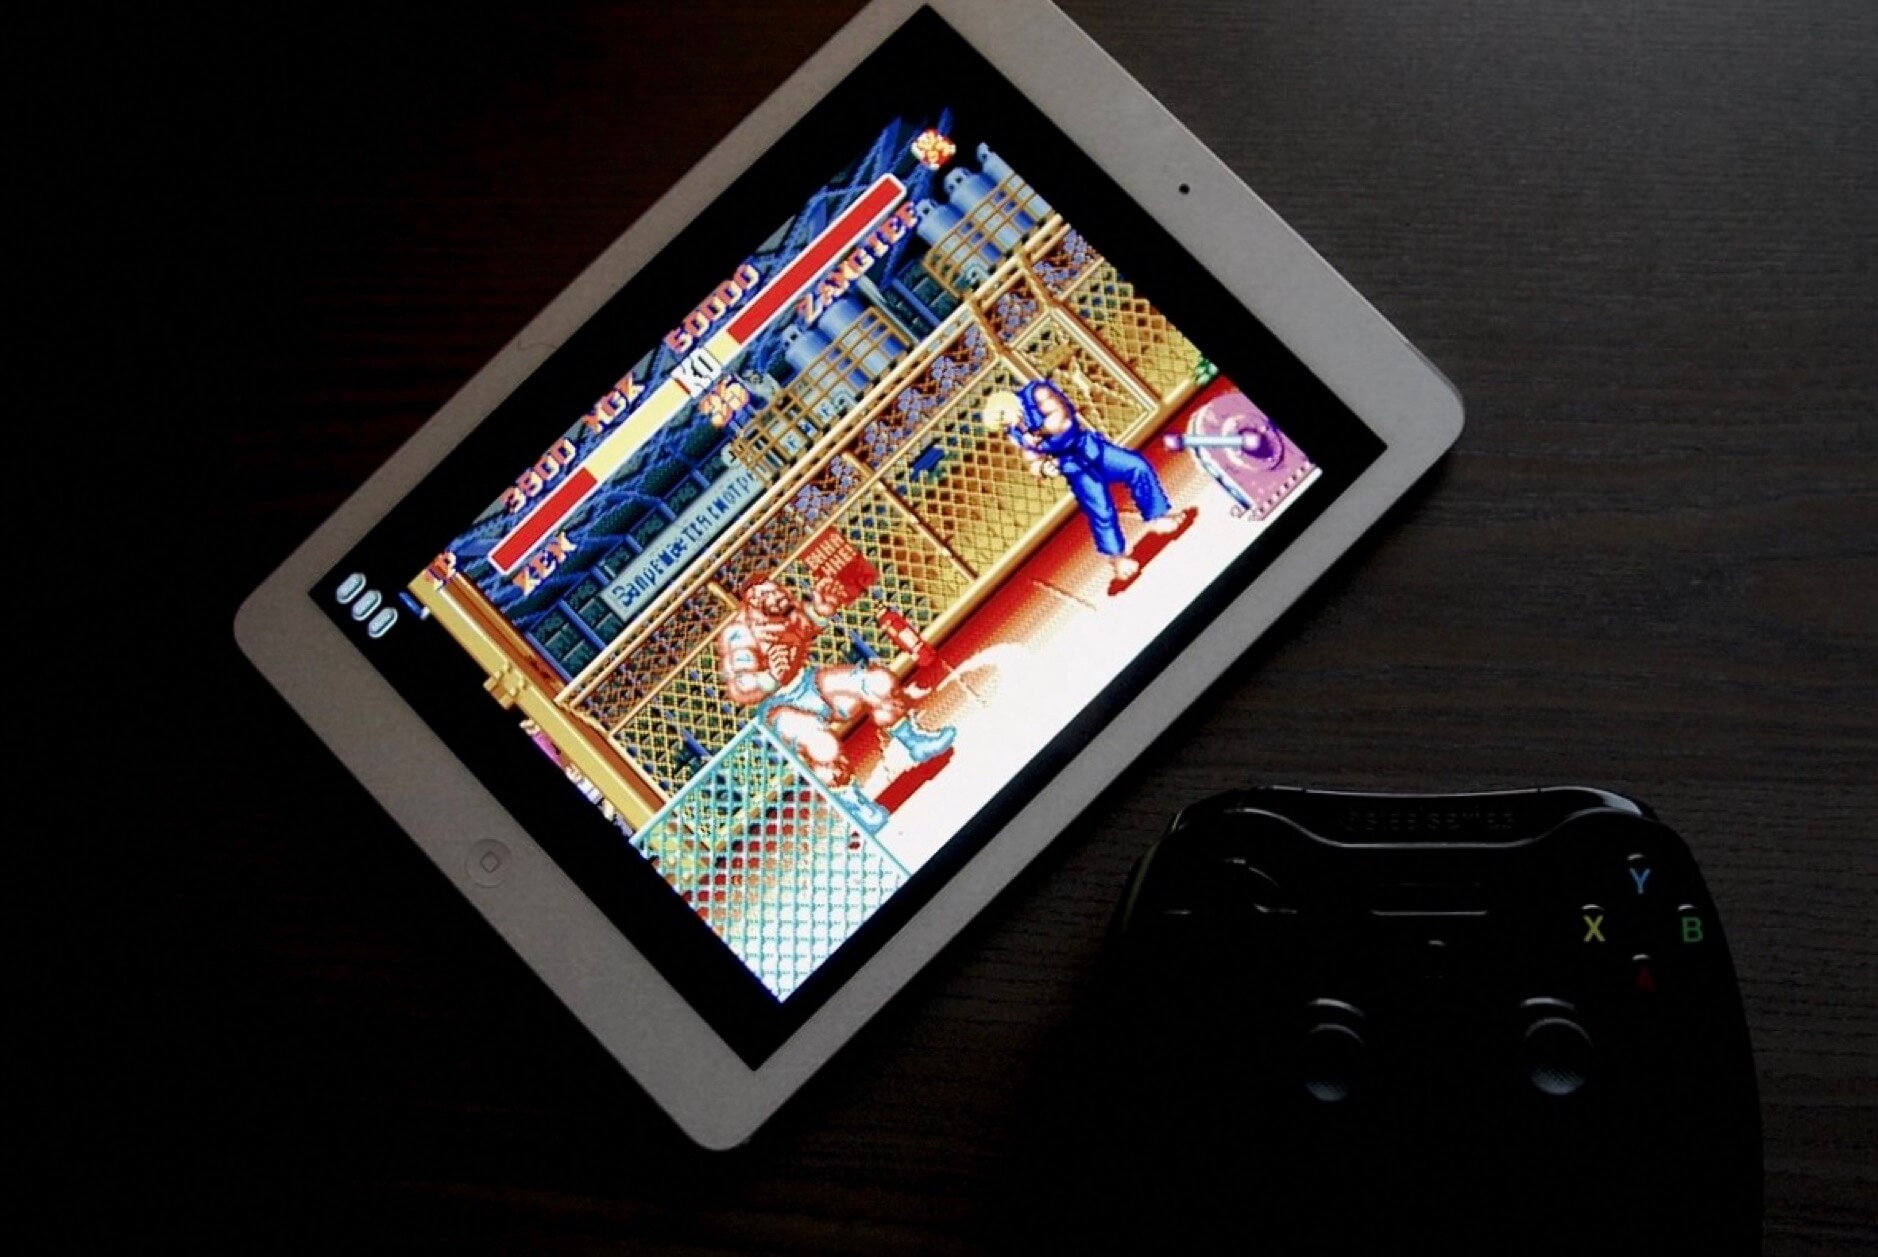 Das Bild zeigt ein iPad, auf dem Street Fighter läuft, und einen Controller, der davor auf einem Tisch liegt. Es sieht so aus, als ob jemand bereit ist, das Spiel mit dem Controller zu spielen.